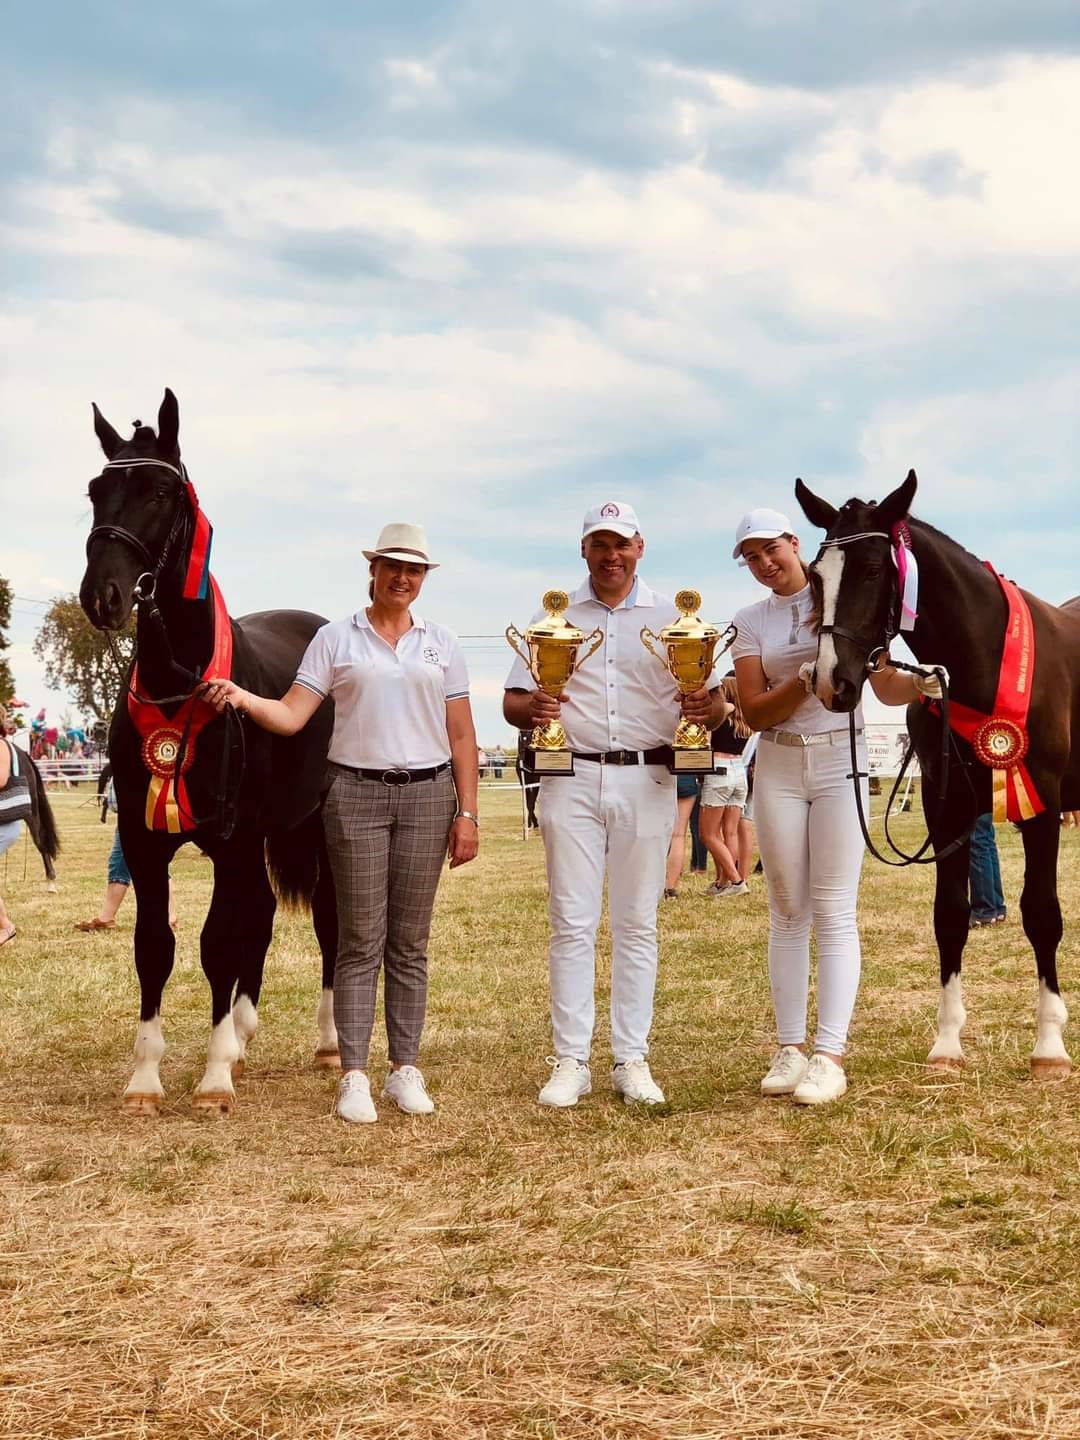 Rodzina Kitlów: Sylwia, Krystian i Dominika ze zwycięskimi końmi podczas czempionatu koni śląskich w Porębie